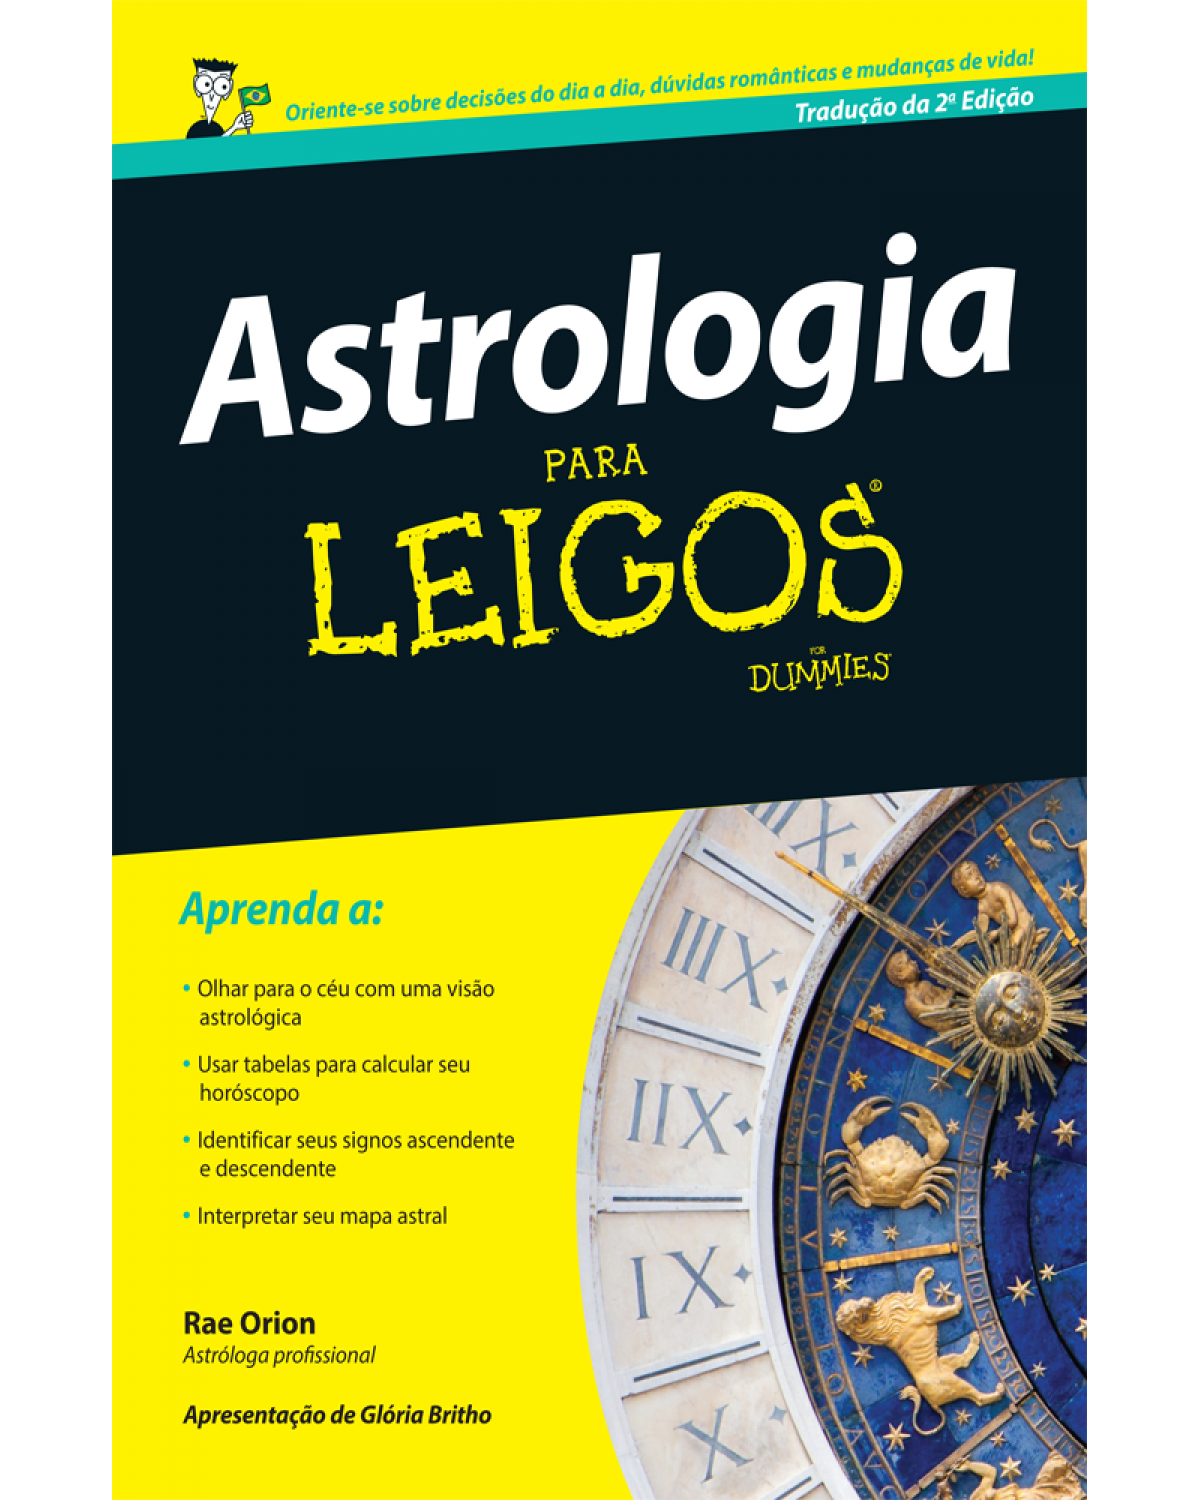 Astrologia para leigos - 2ª Edição | 2015